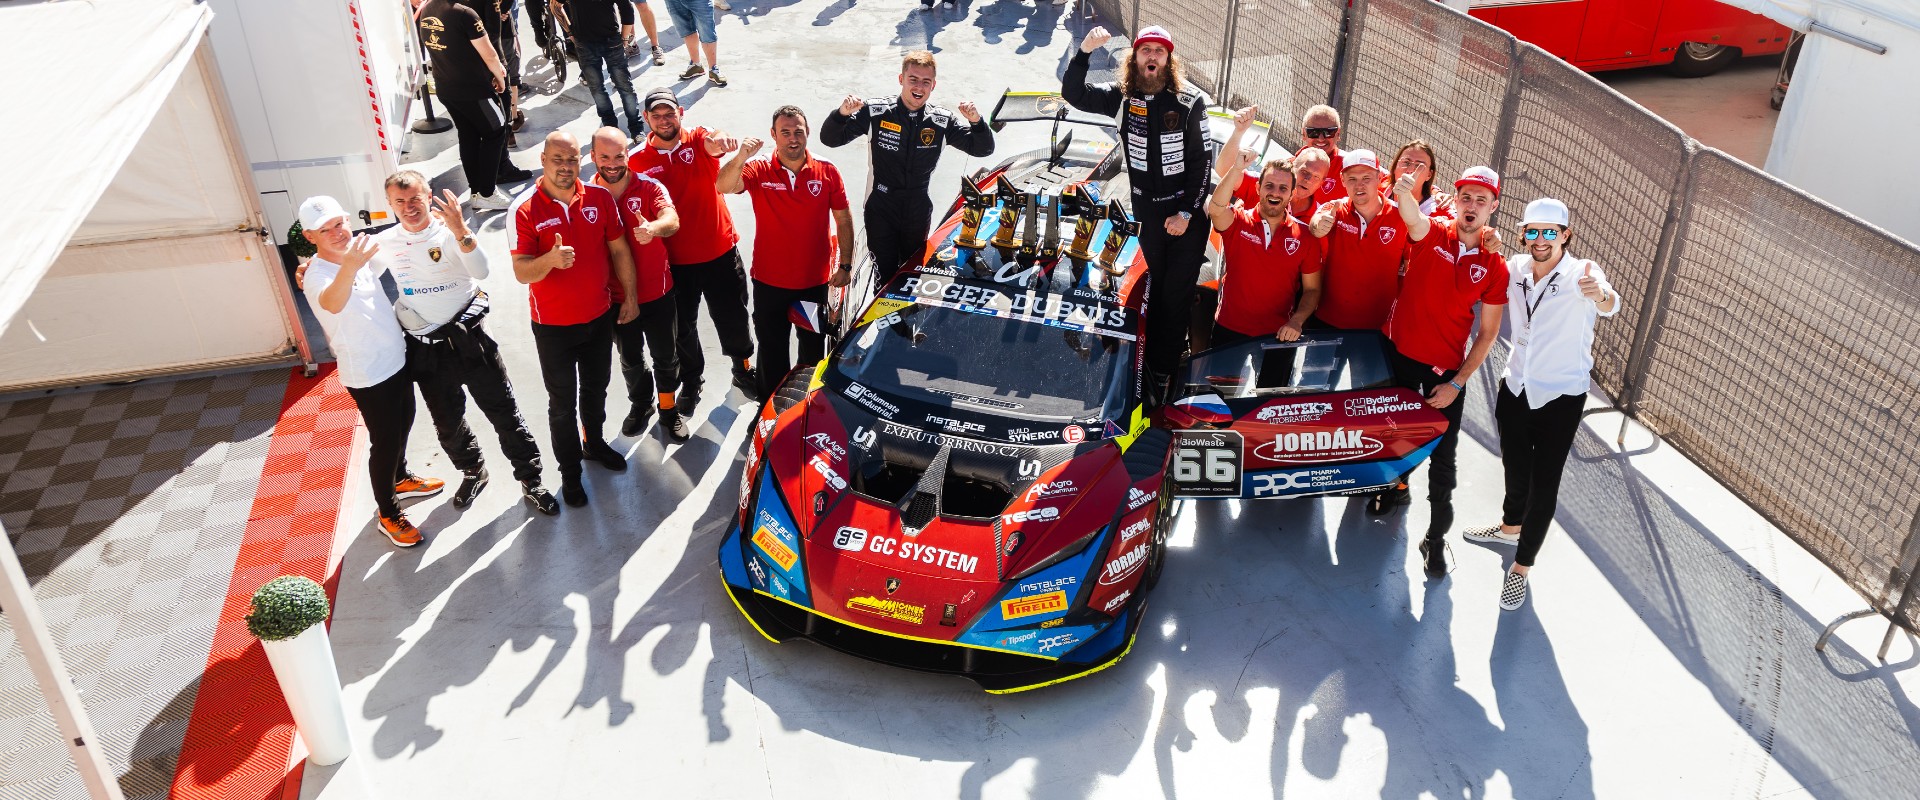 Double! Mičánek Motorsport powered by Buggyra veze z Barcelony nejlepší výsledek v historii